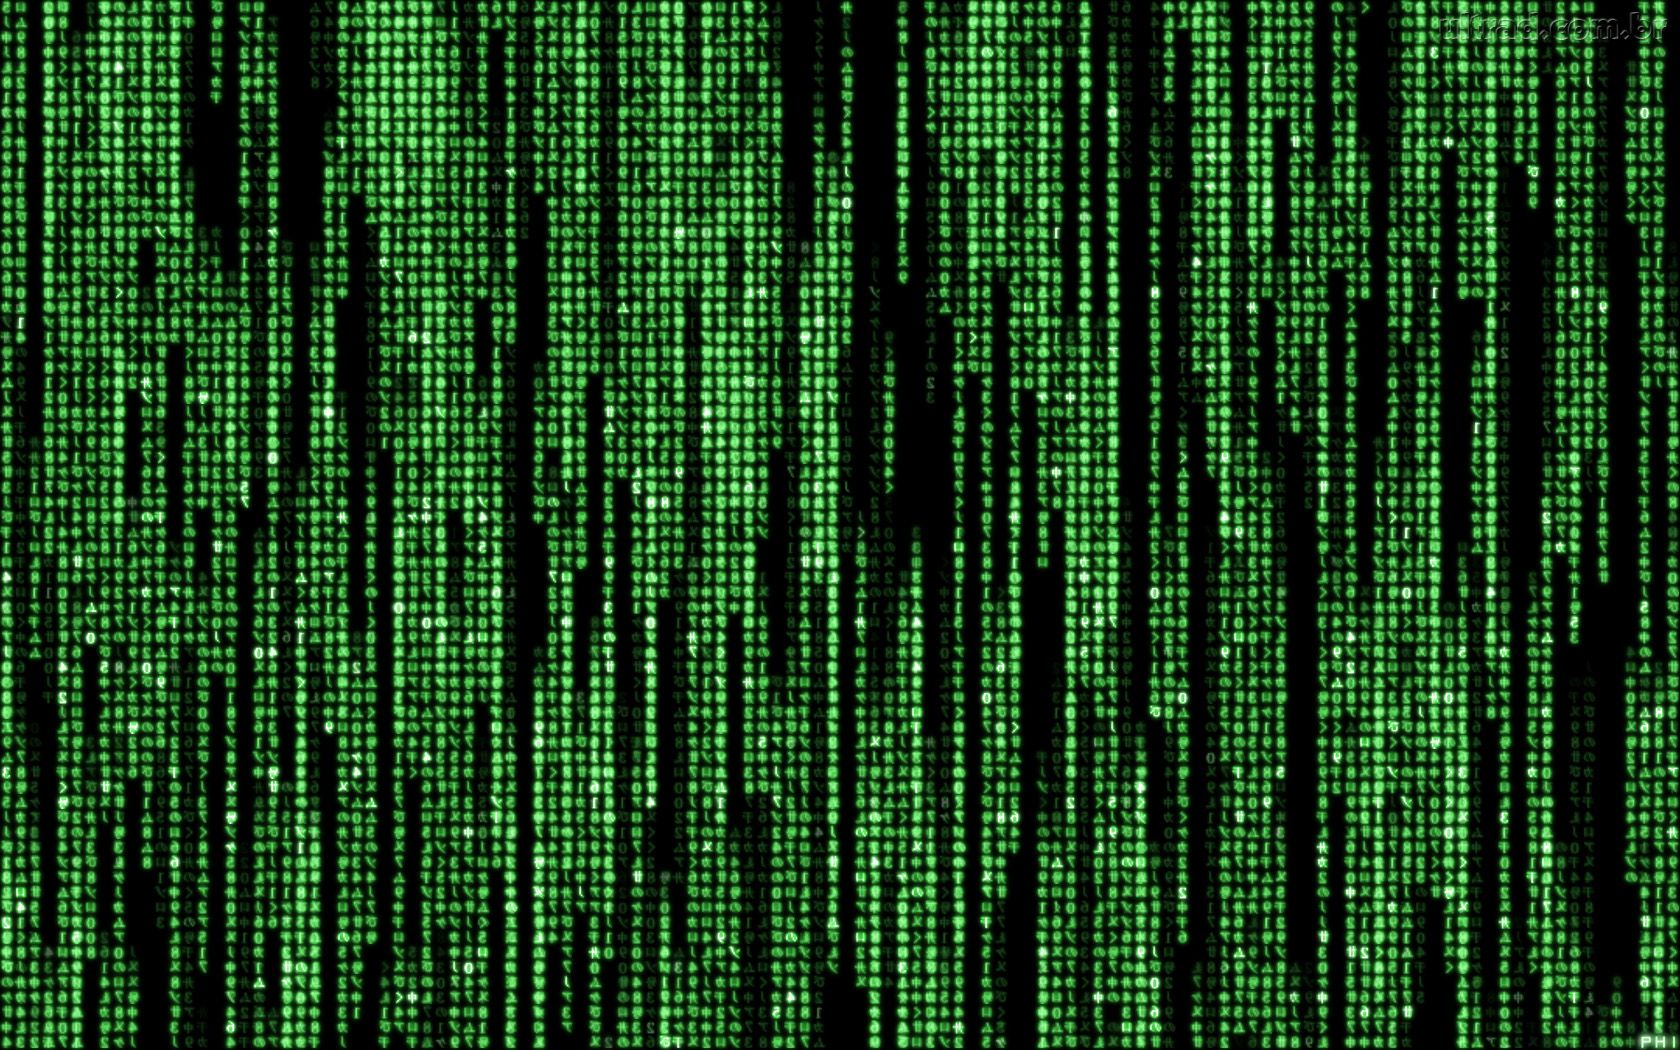  matrix foto matrix animada matrix em letras numeros matrix matrix free